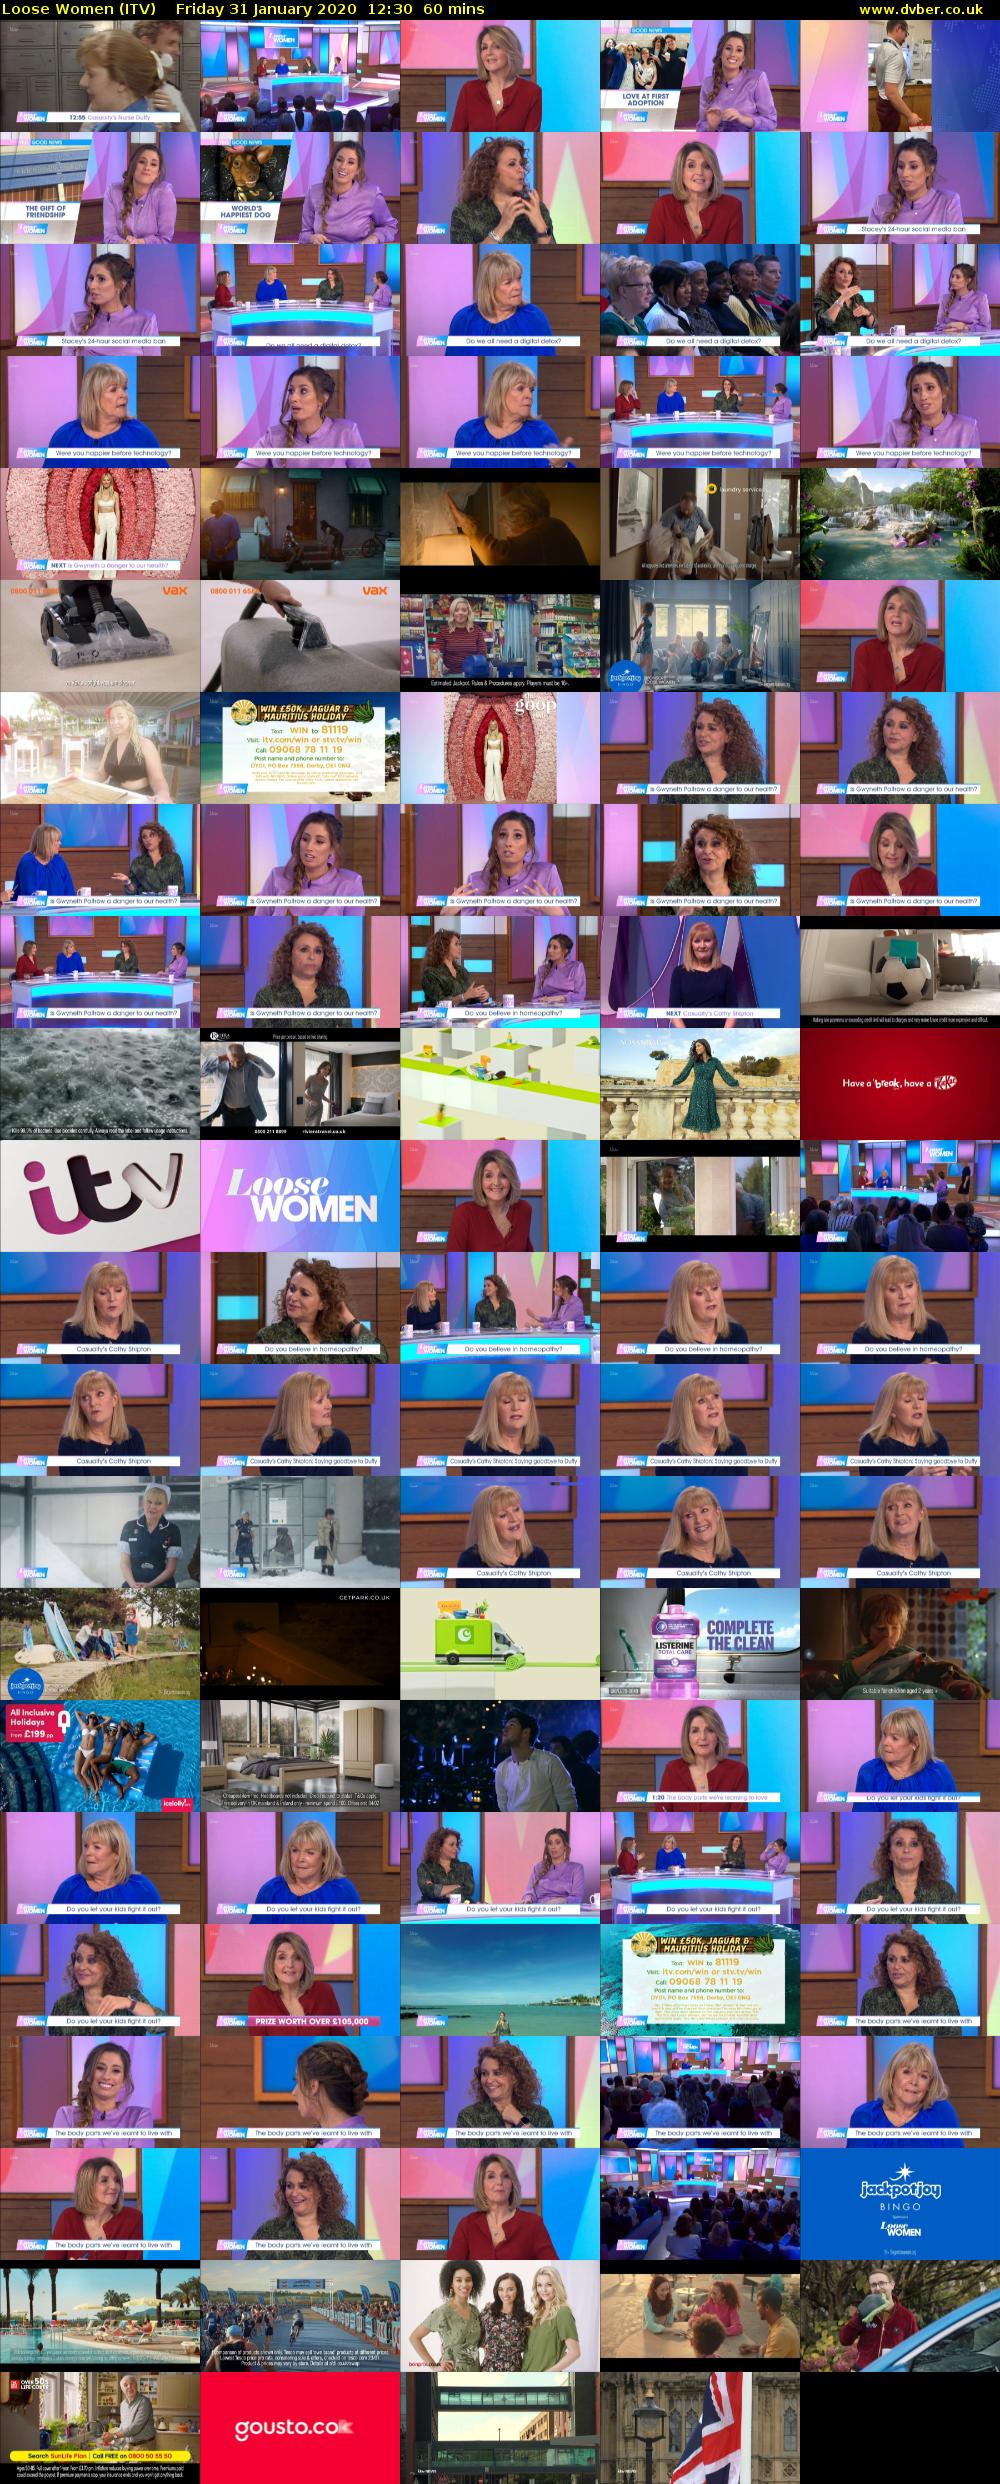 Loose Women (ITV) Friday 31 January 2020 12:30 - 13:30